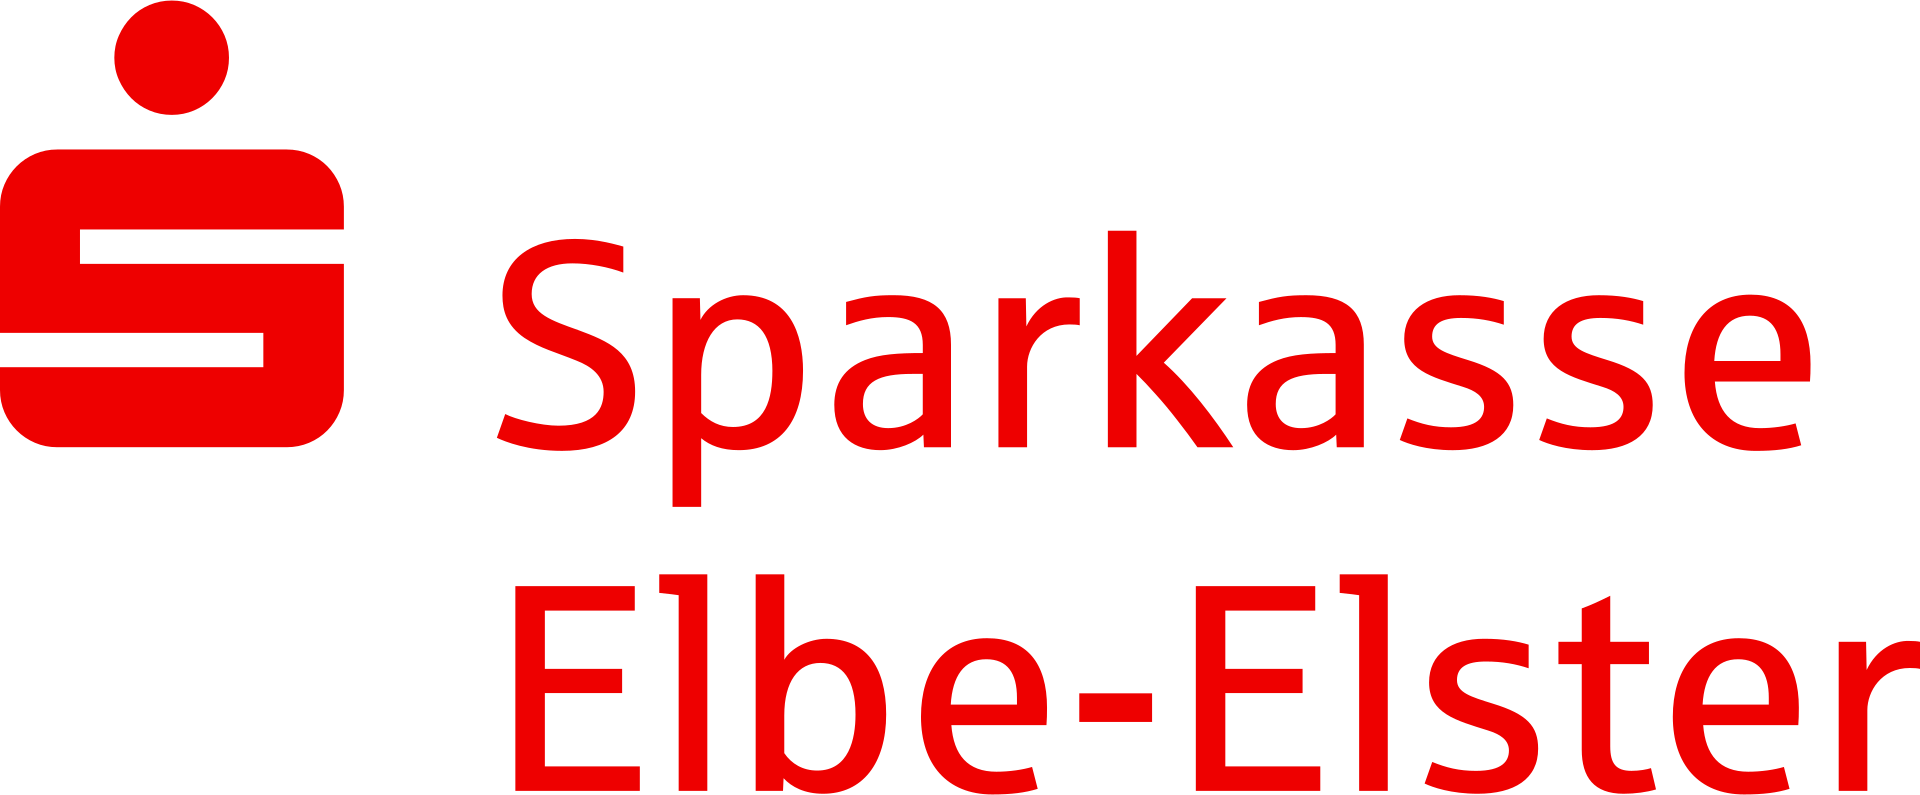 Sparkasse_Elbe-Elster